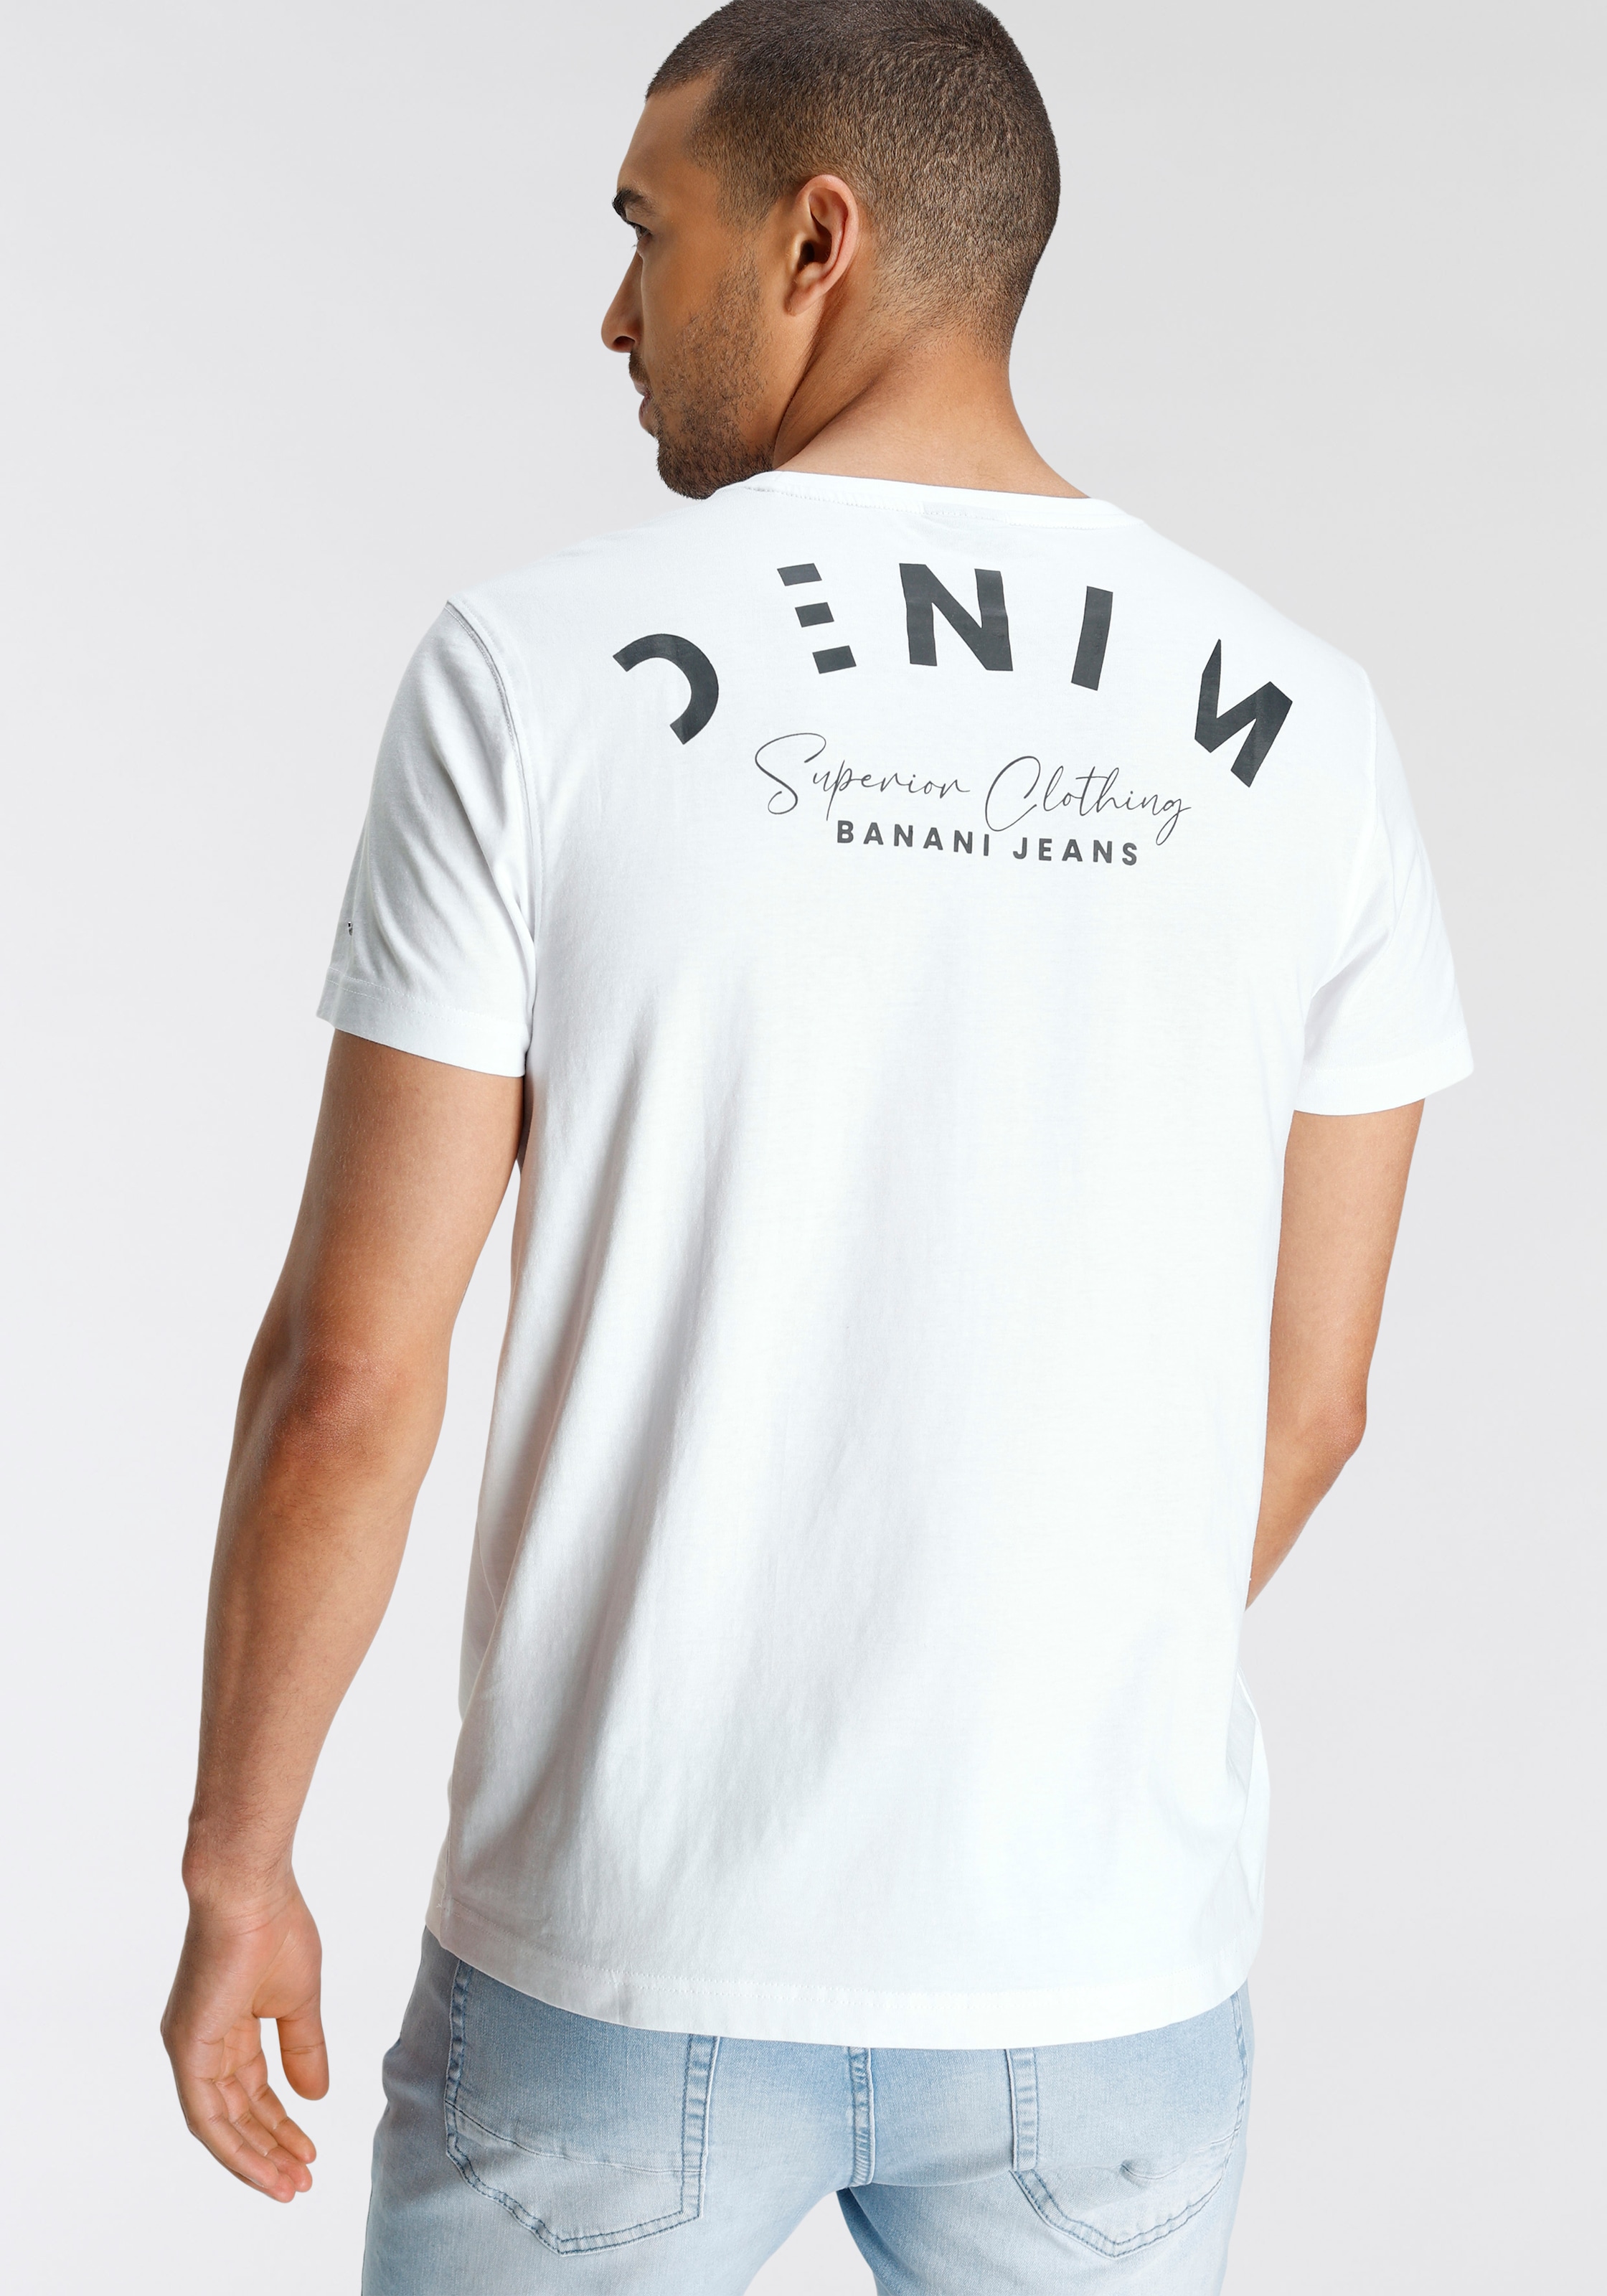 bei ♕ Rückenprint Banani mit Bruno T-Shirt, coolem